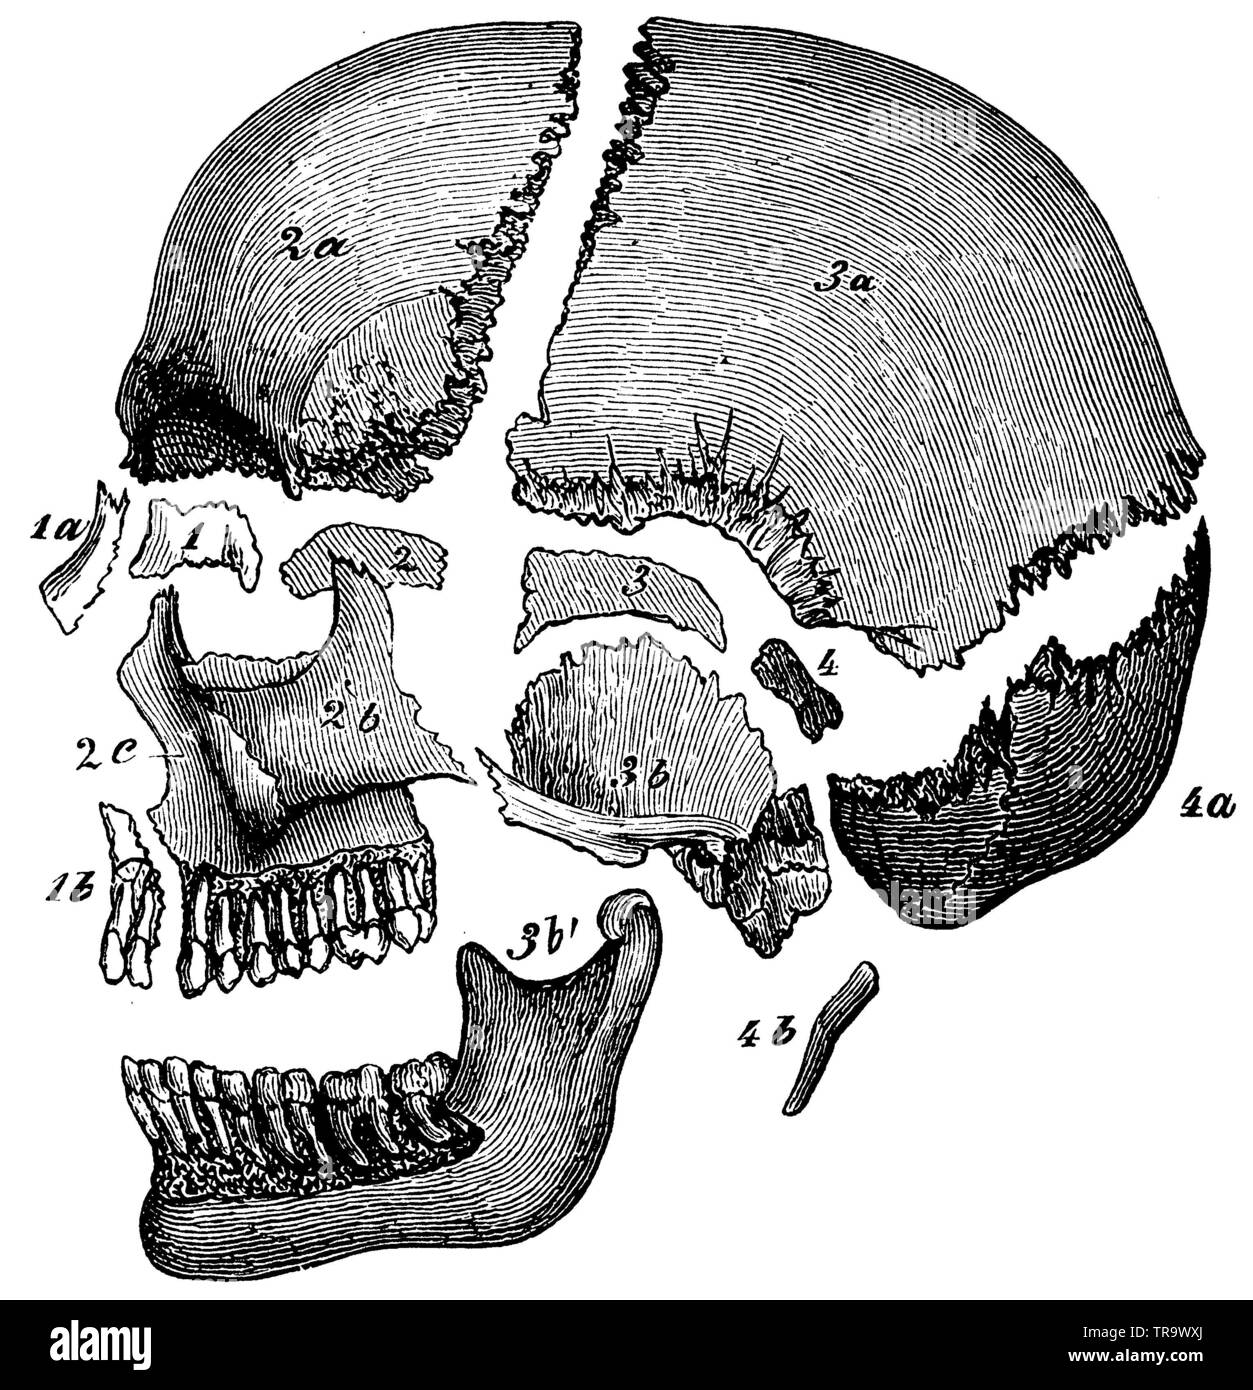 Menschlicher Schädel von der Seite, die einzelnen Knochen voneinander getrennt. Die Stücke, die die vier Schädel Wirbel markiert sind 1-4. 1) ethmoid Knochen, 1 a) nasalen Knochen, 1 b) die intermaxilläre Kiefer, 2) der vordere Teil der Keilschrift Knochen, 2 a) Stirn Knochen, 2 b) Jochbeinbogen Knochen, 2 c) Oberkiefer, 3) Hinterer Teil der Keilschrift Knochen, 3a) Scheitelbein, 3 b) zeitliche Knochen, 3 b') Unterkiefer, 4 und 4a) Hinterhauptschuppe, 4b) Zungenbein,, (Enzyklopädie, 1893) Stockfoto